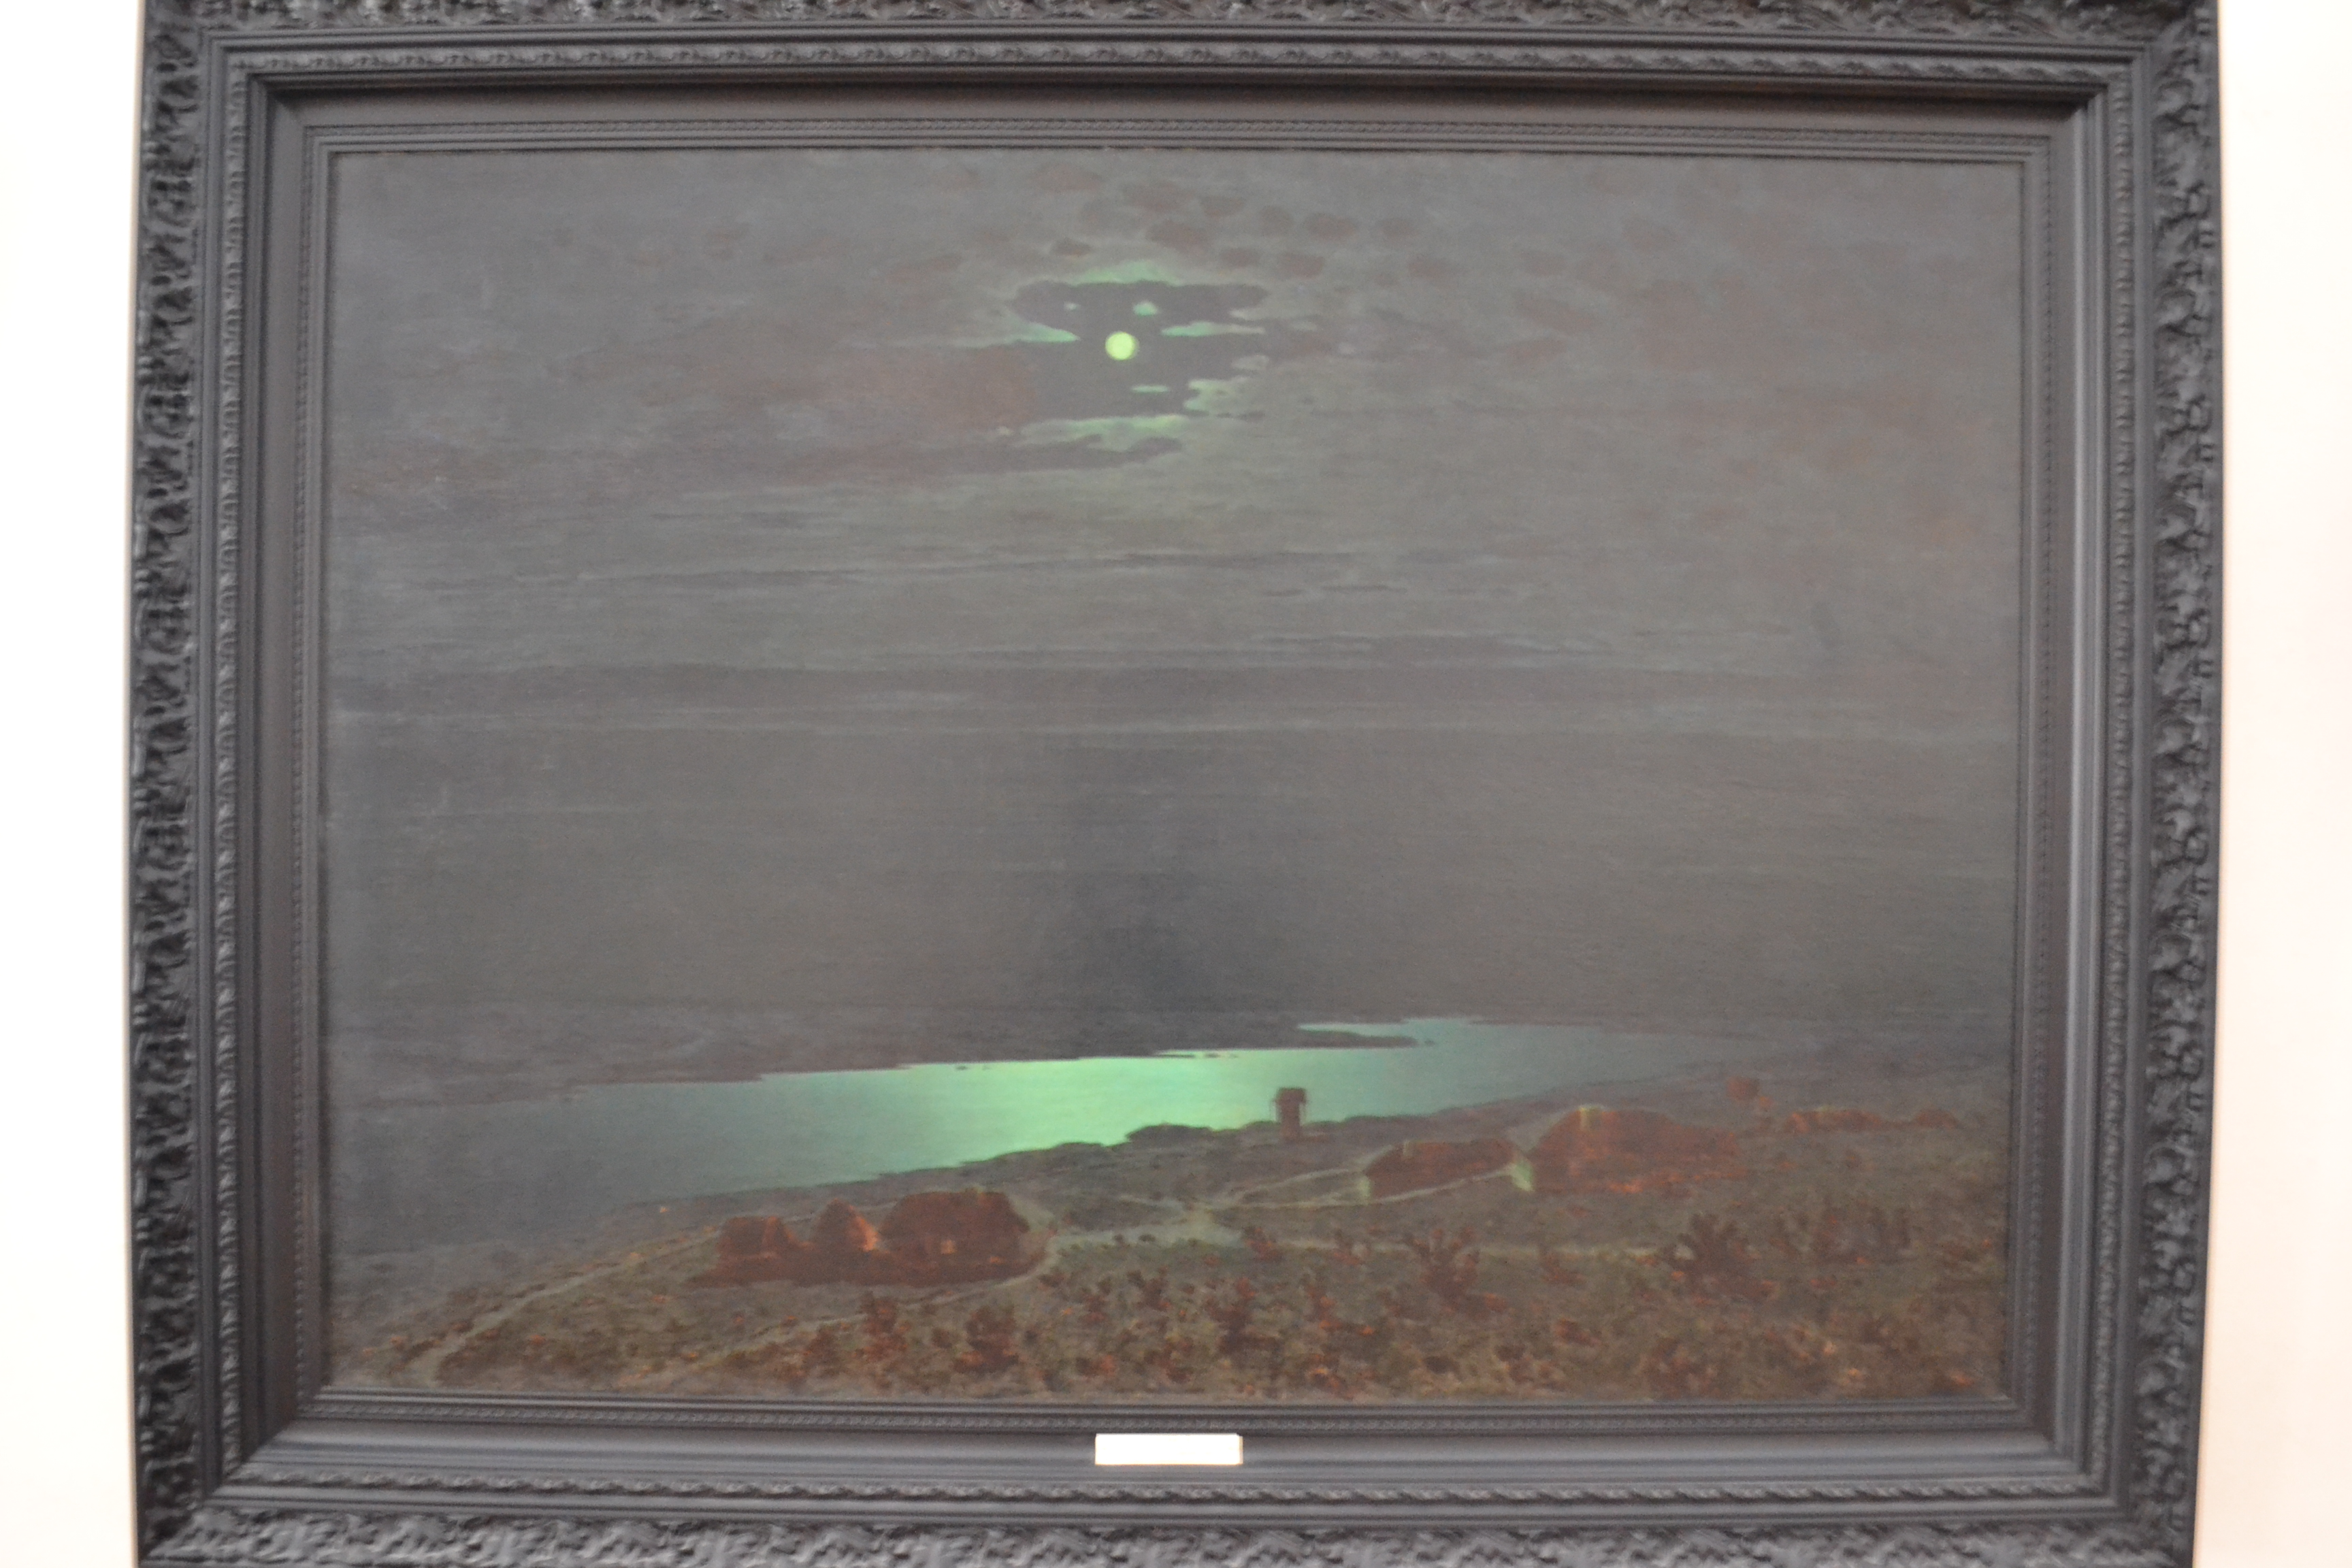 Картина А. И. Куинджи «Лунная ночь на Днепре» (авторская копия 1882 г.). Симферопольский художественный музей. В центре видна тёмная буква «К» или «R» («Куинджи» или «Konstantin Romanov»).